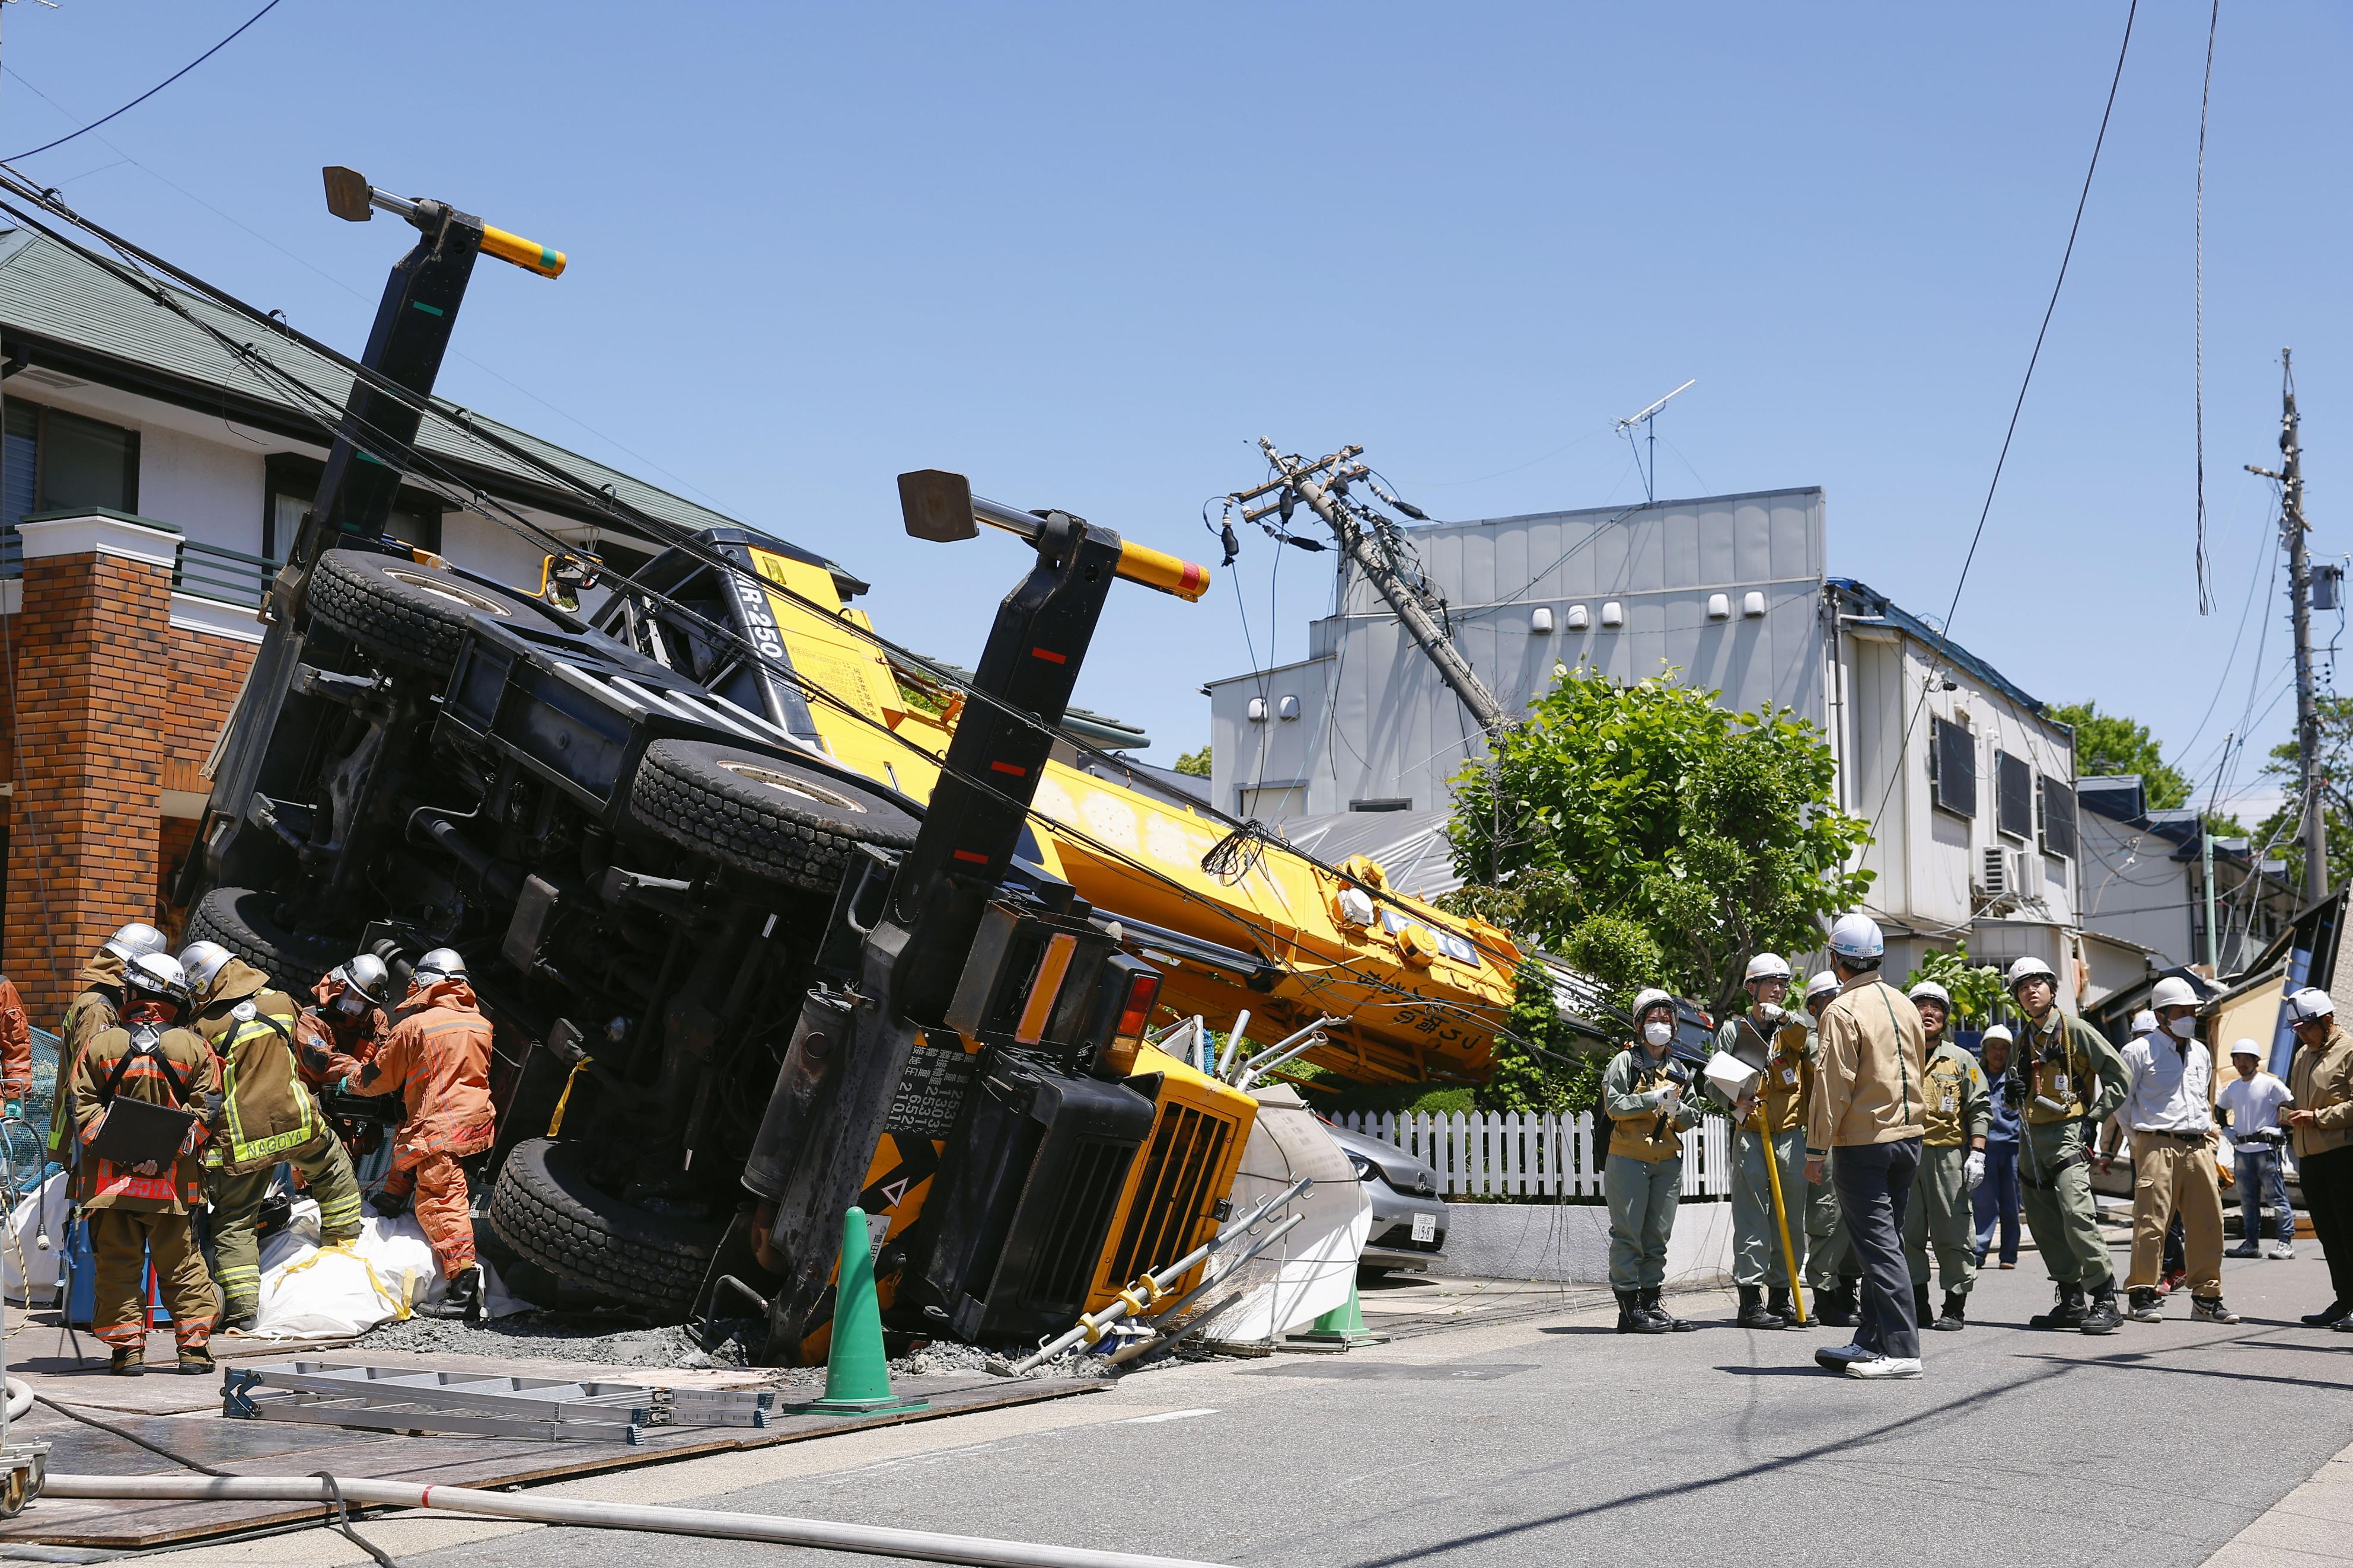 クレーン車転倒し建物損壊 けが人なし、1700戸一時停電 名古屋 - 産経 